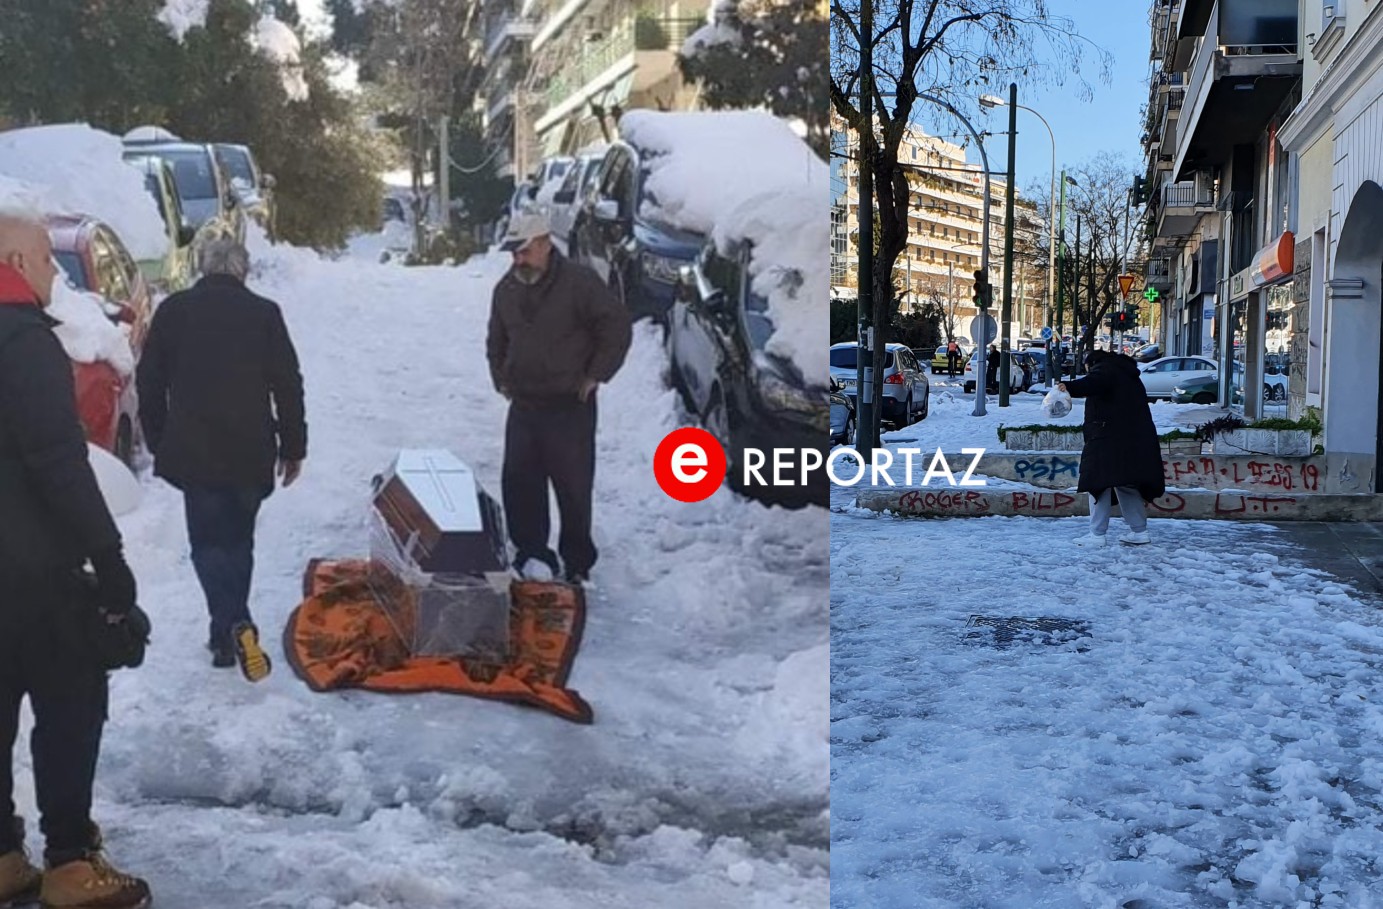 Κακοκαιρία "Ελπίς": Εικόνες ντροπής στου Ζωγράφου - Μετέφεραν νεκρό σε φέρετρο στον πάγο - Πεζοδρόμια "παγοδρόμια" (φωτό -βίντεο)